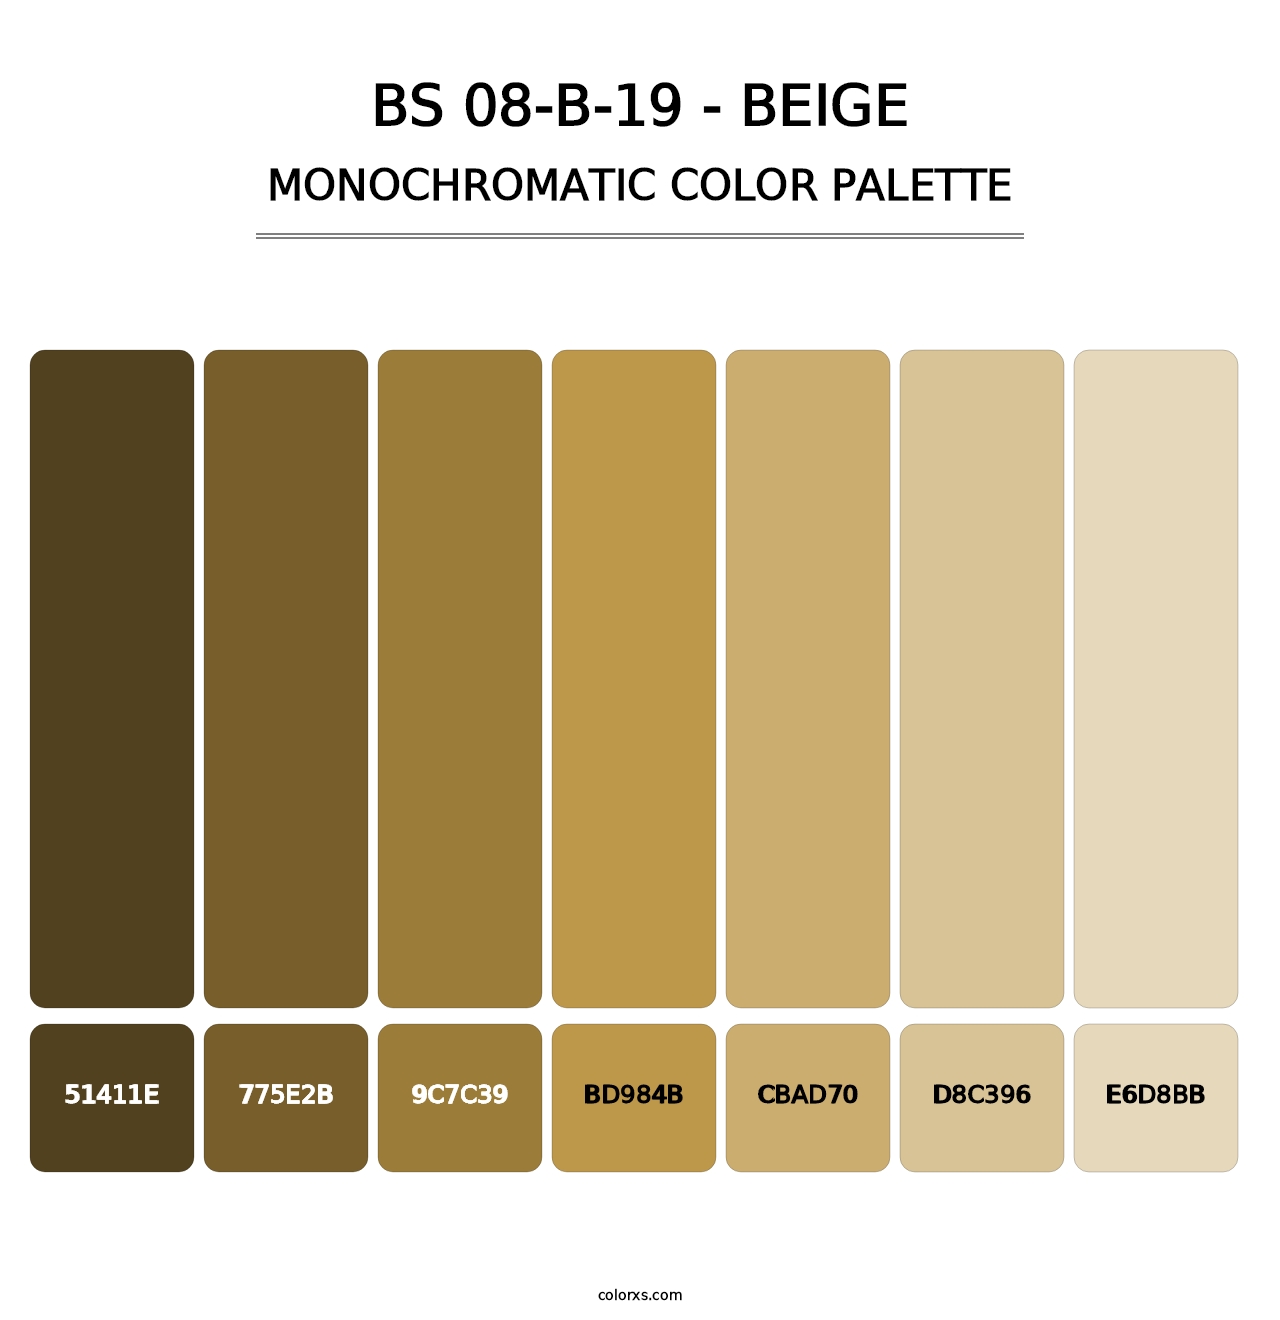 BS 08-B-19 - Beige - Monochromatic Color Palette